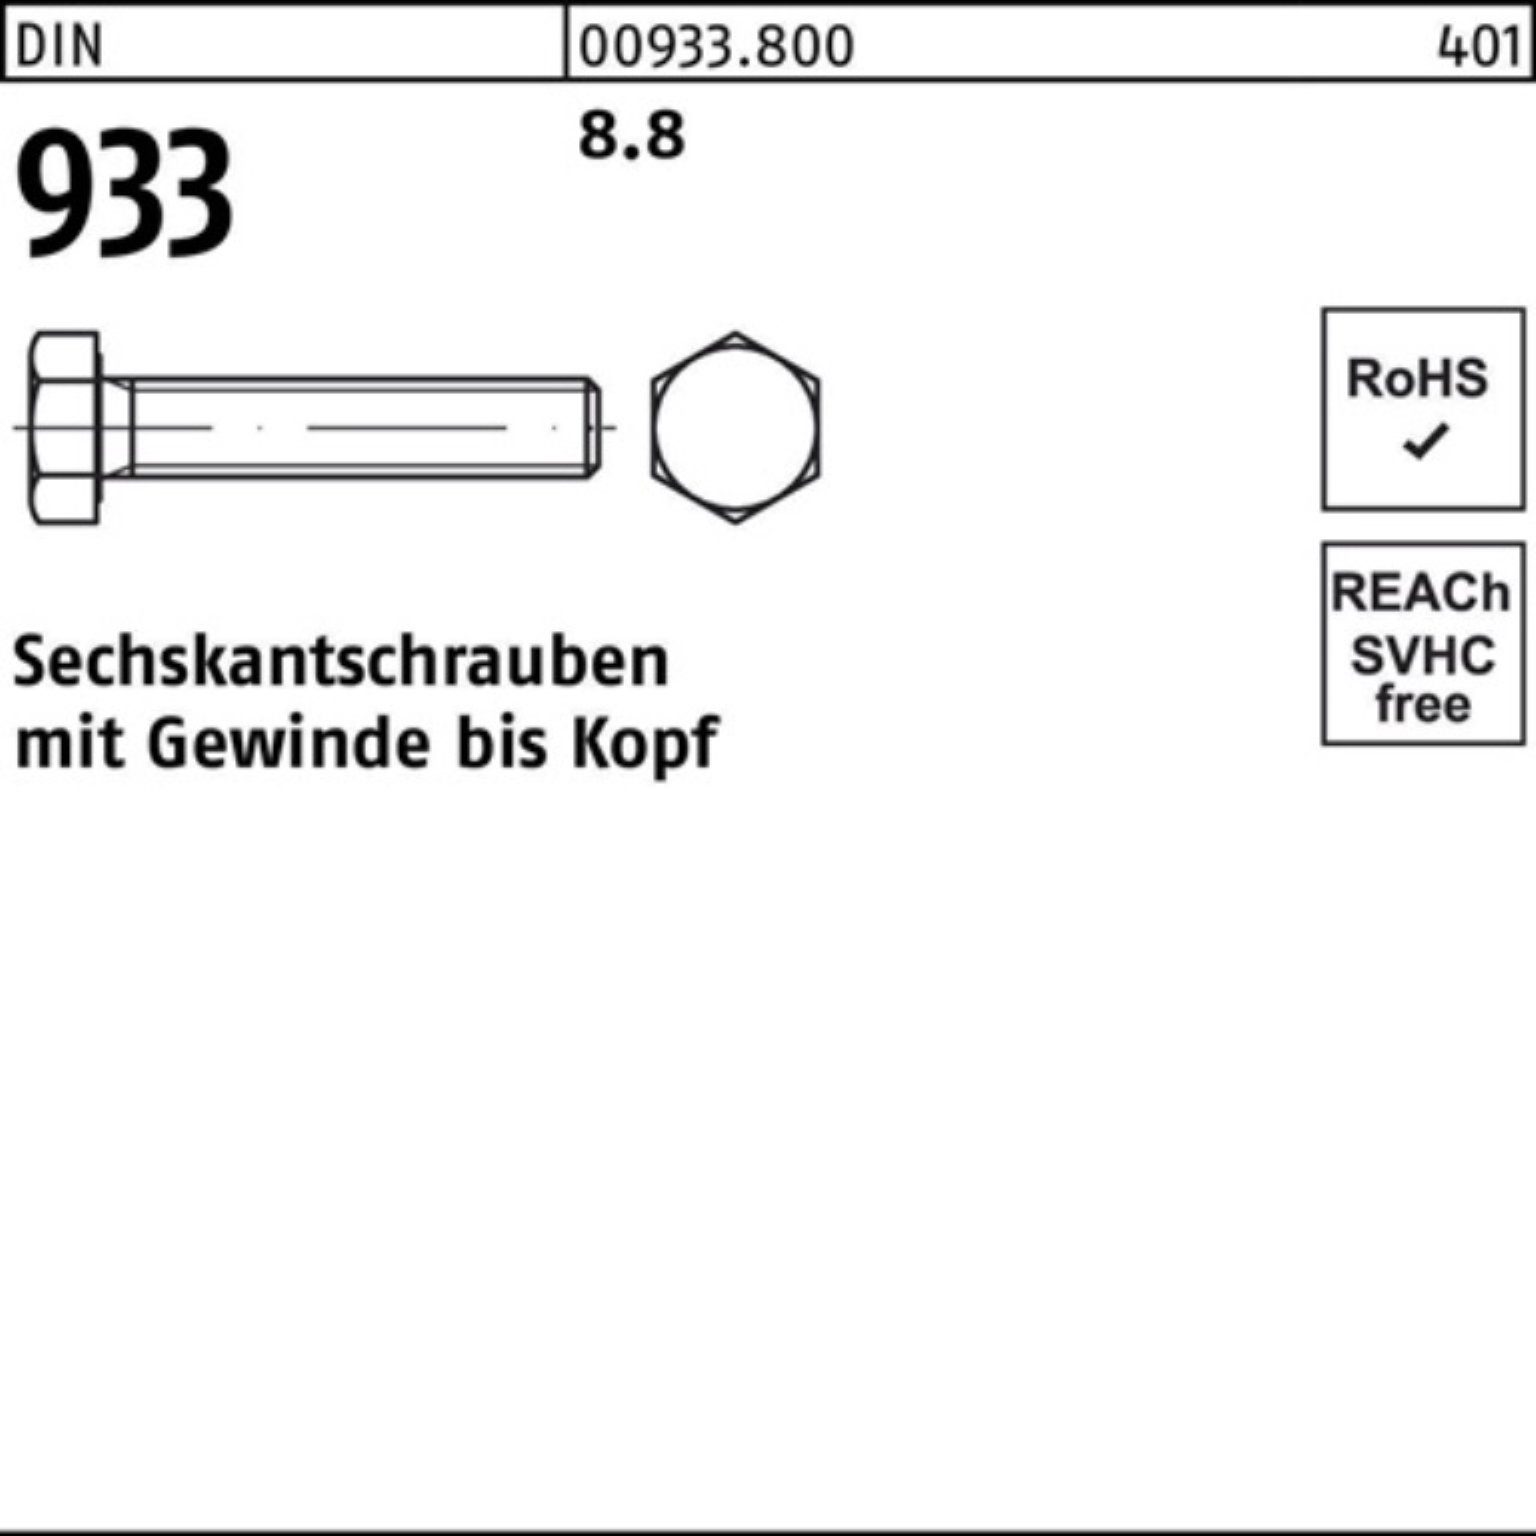 Pack VG Stück 933 Reyher Sechskantschraube 16 933 M3x 500er 500 Sechskantschraube 8.8 DIN DIN